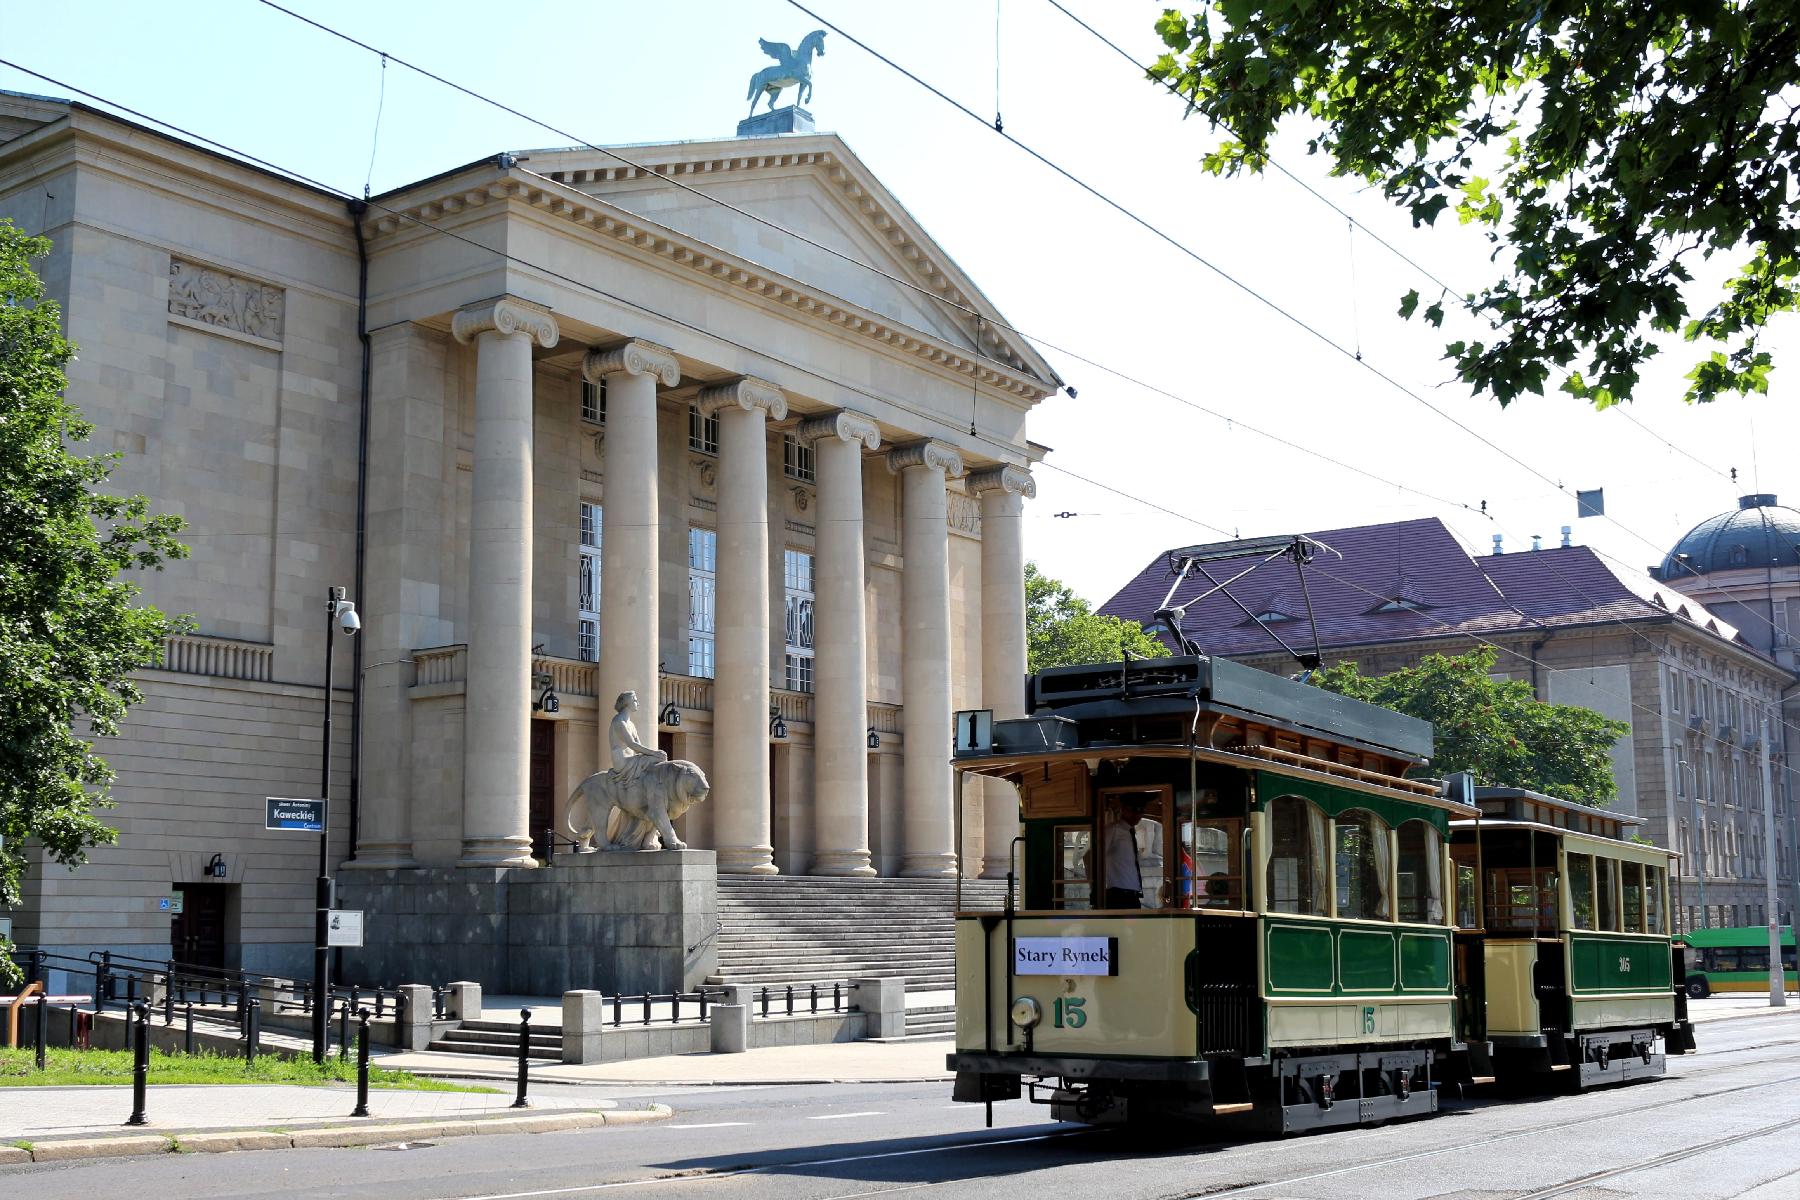 Na pierwszym planie widać historyczny tramwaj jadący ul. Fredry. W tle znajduje się budynek opery, fot. MPK. - grafika artykułu